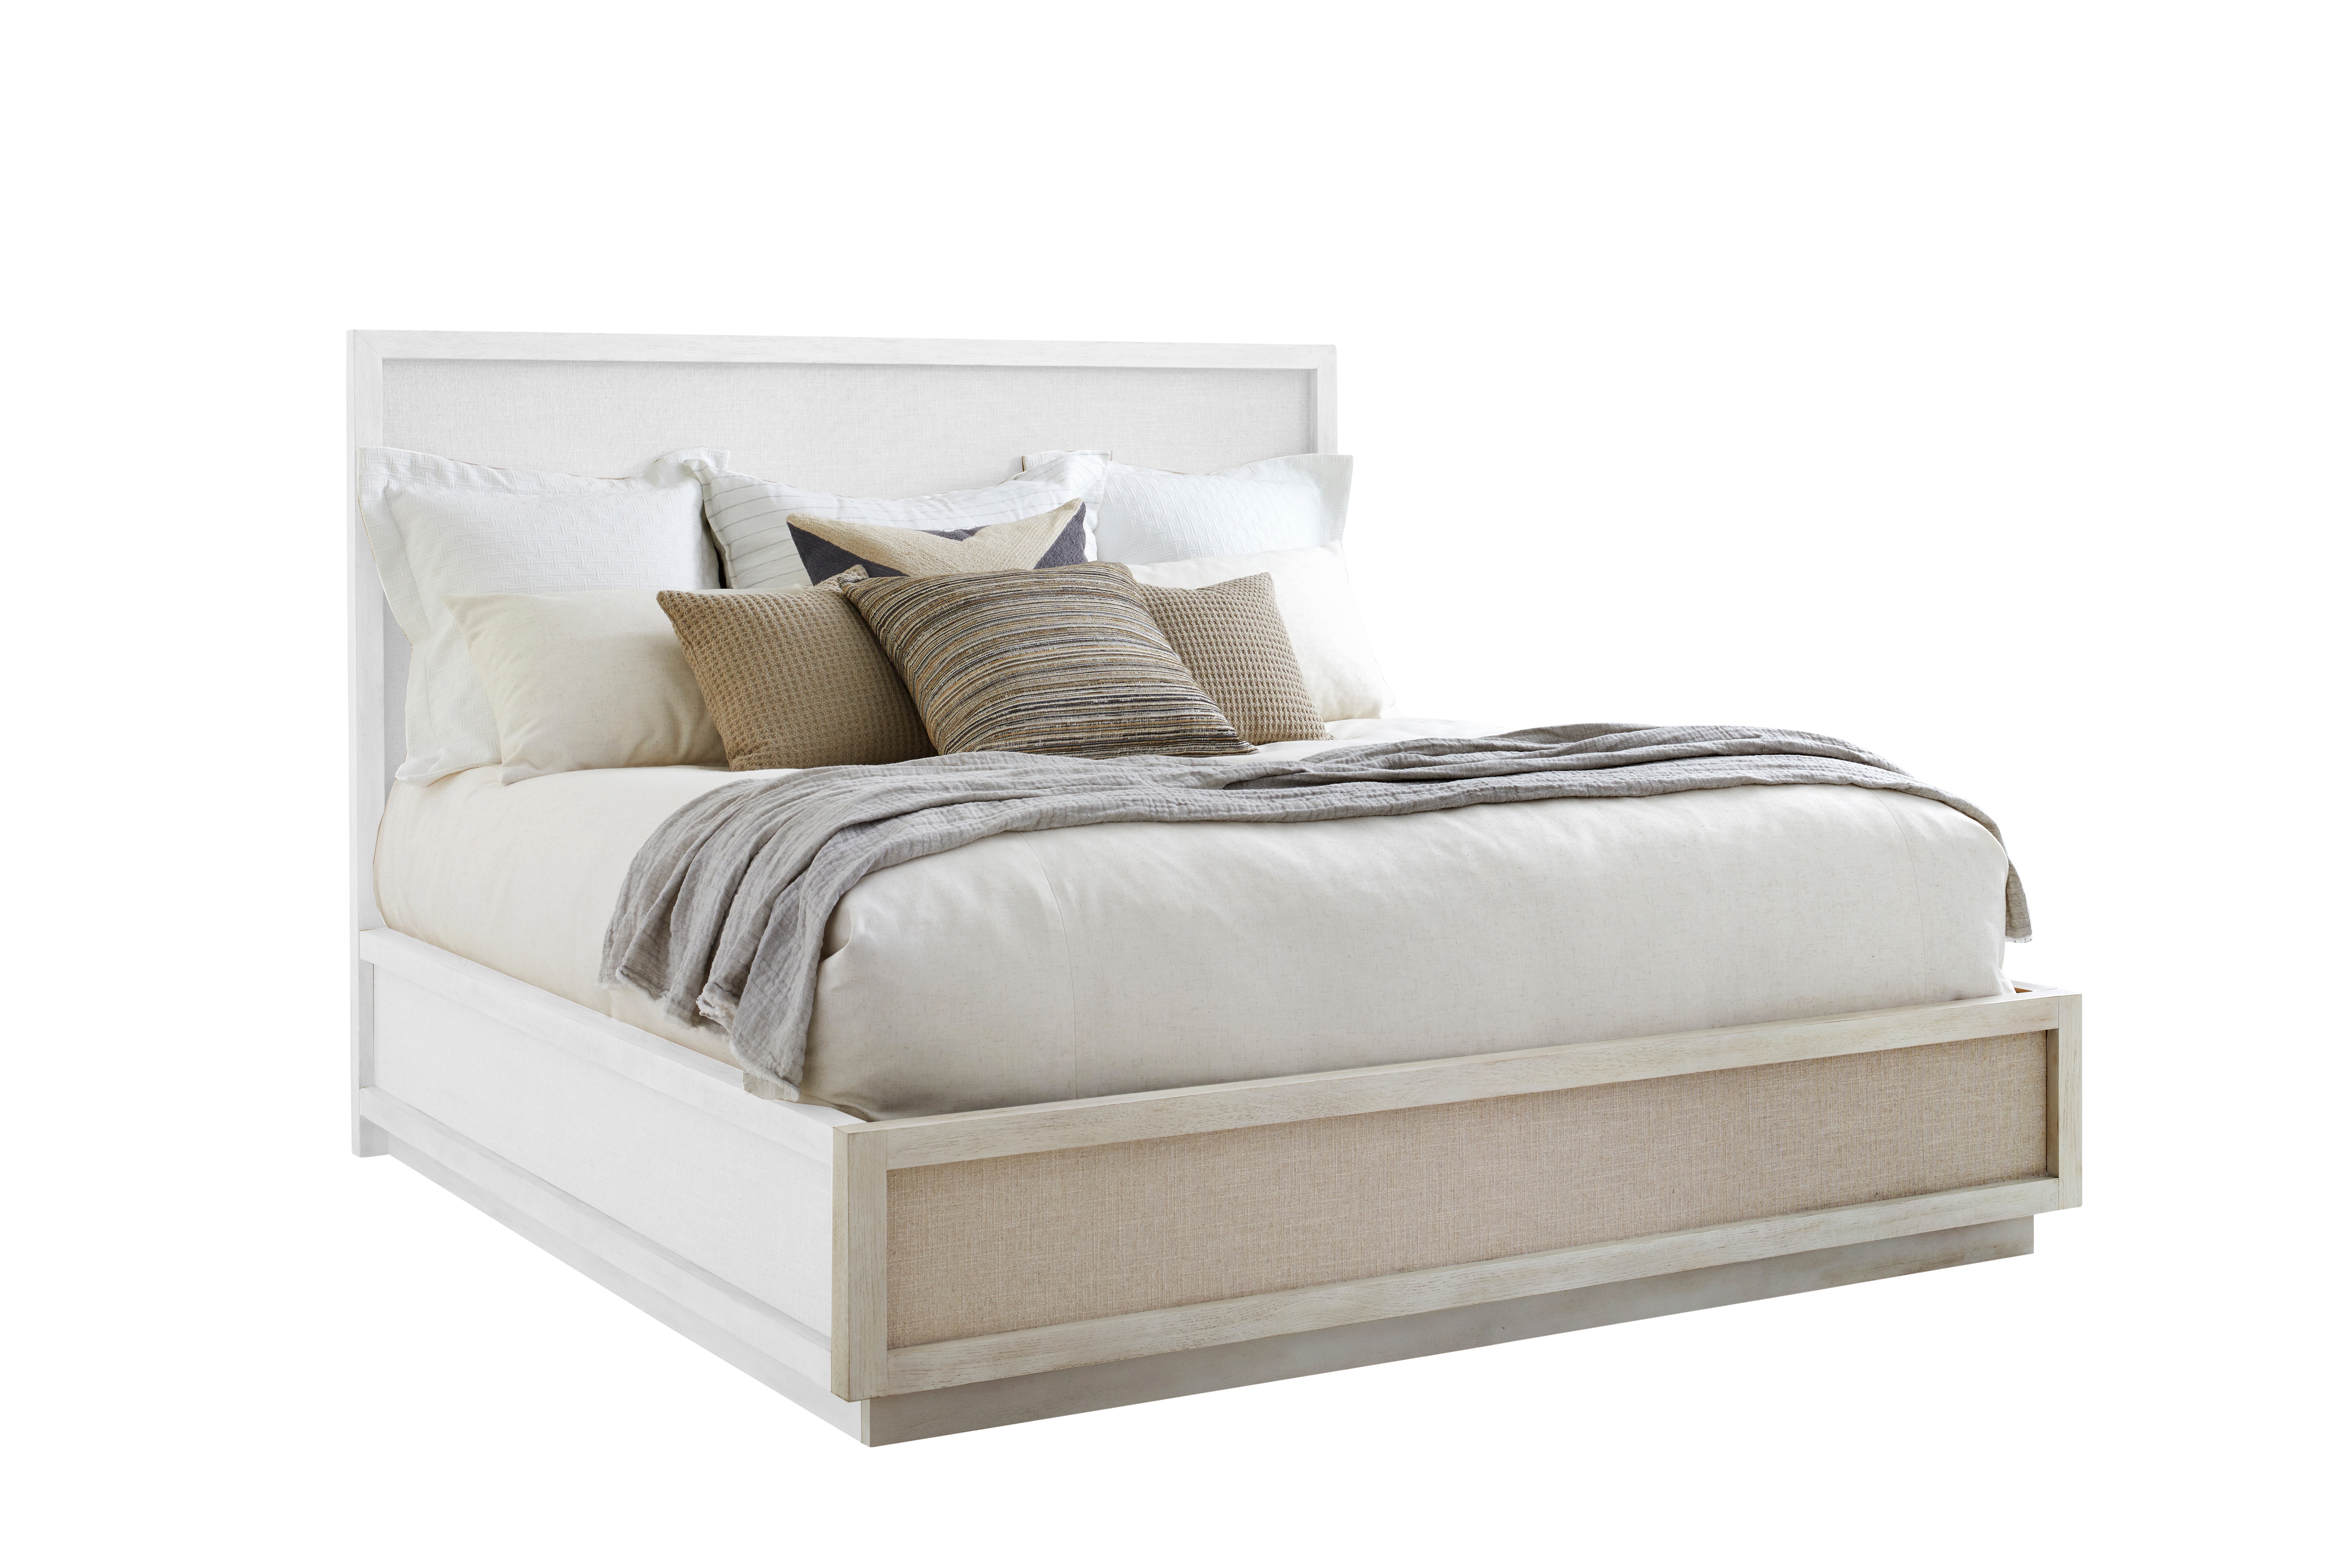 ART Furniture Bedroom 5/0 Wood Platform Bed Footboard 299125 